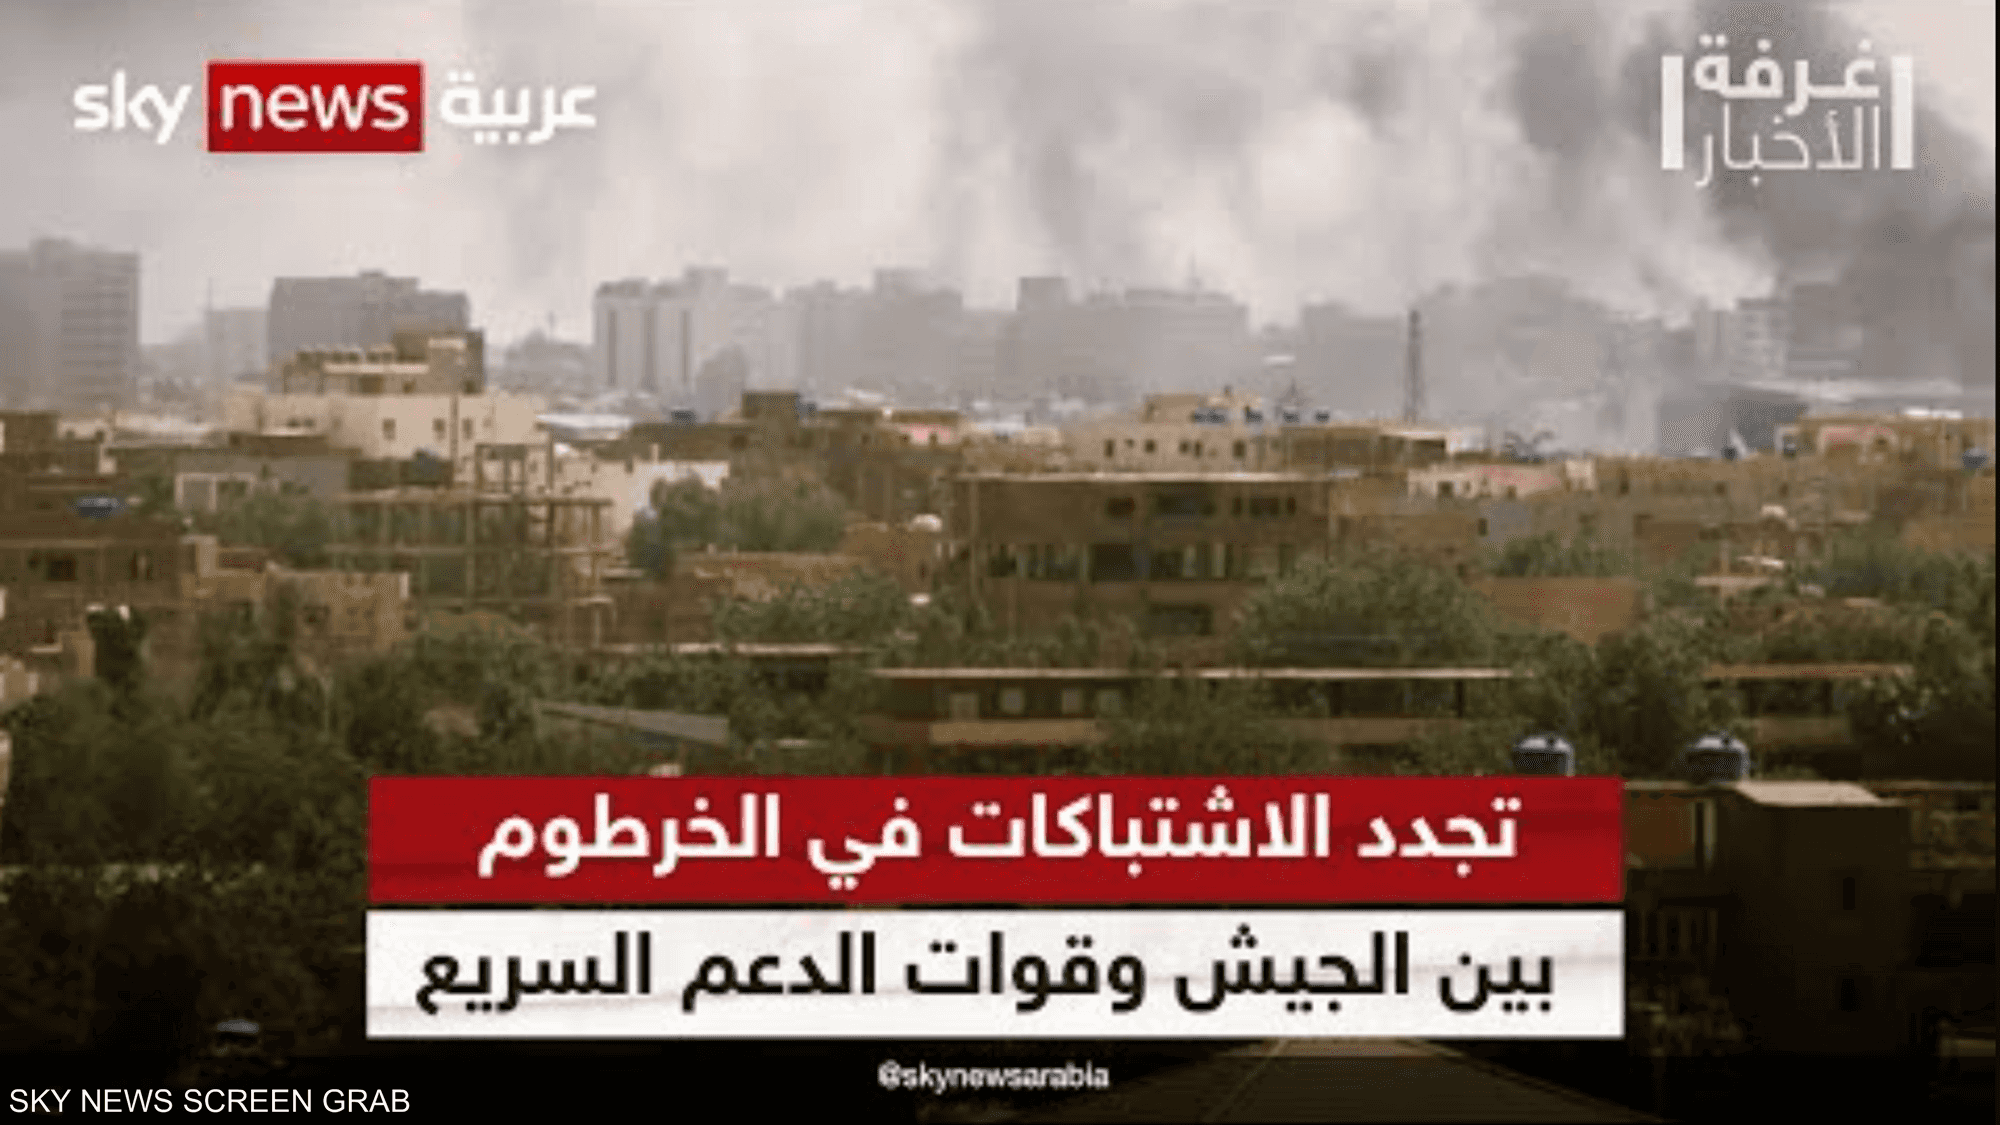 السودان هدوء حذر وترقّب لما بعد الهدنة غرفة الأخبار سكاي نيوز عربية 